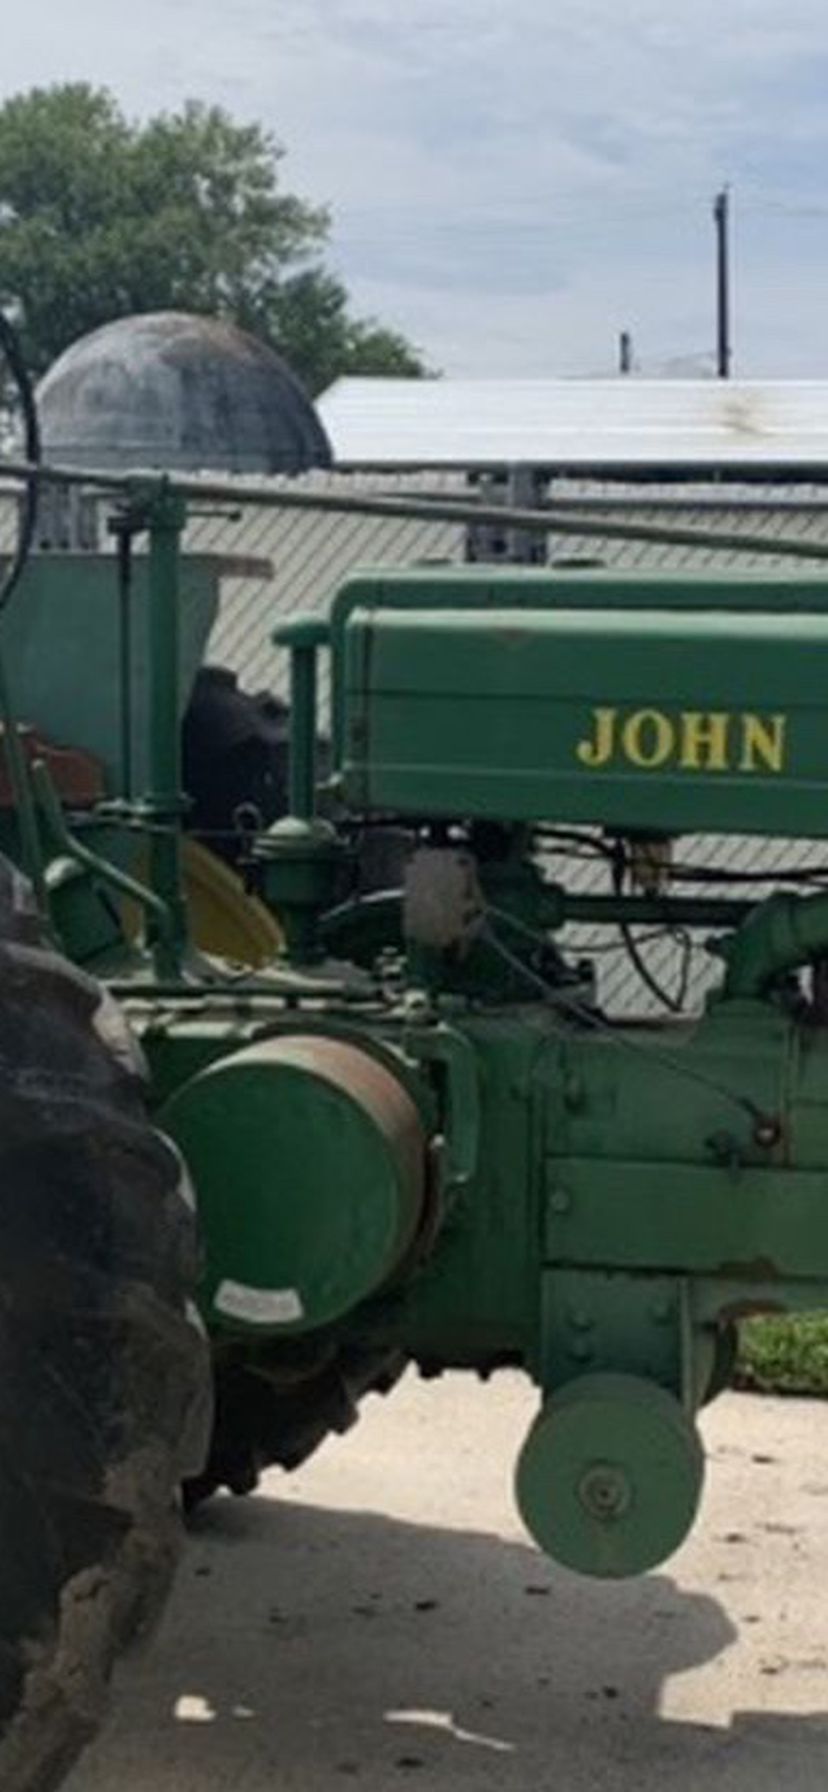 John Deere Classic Tractor